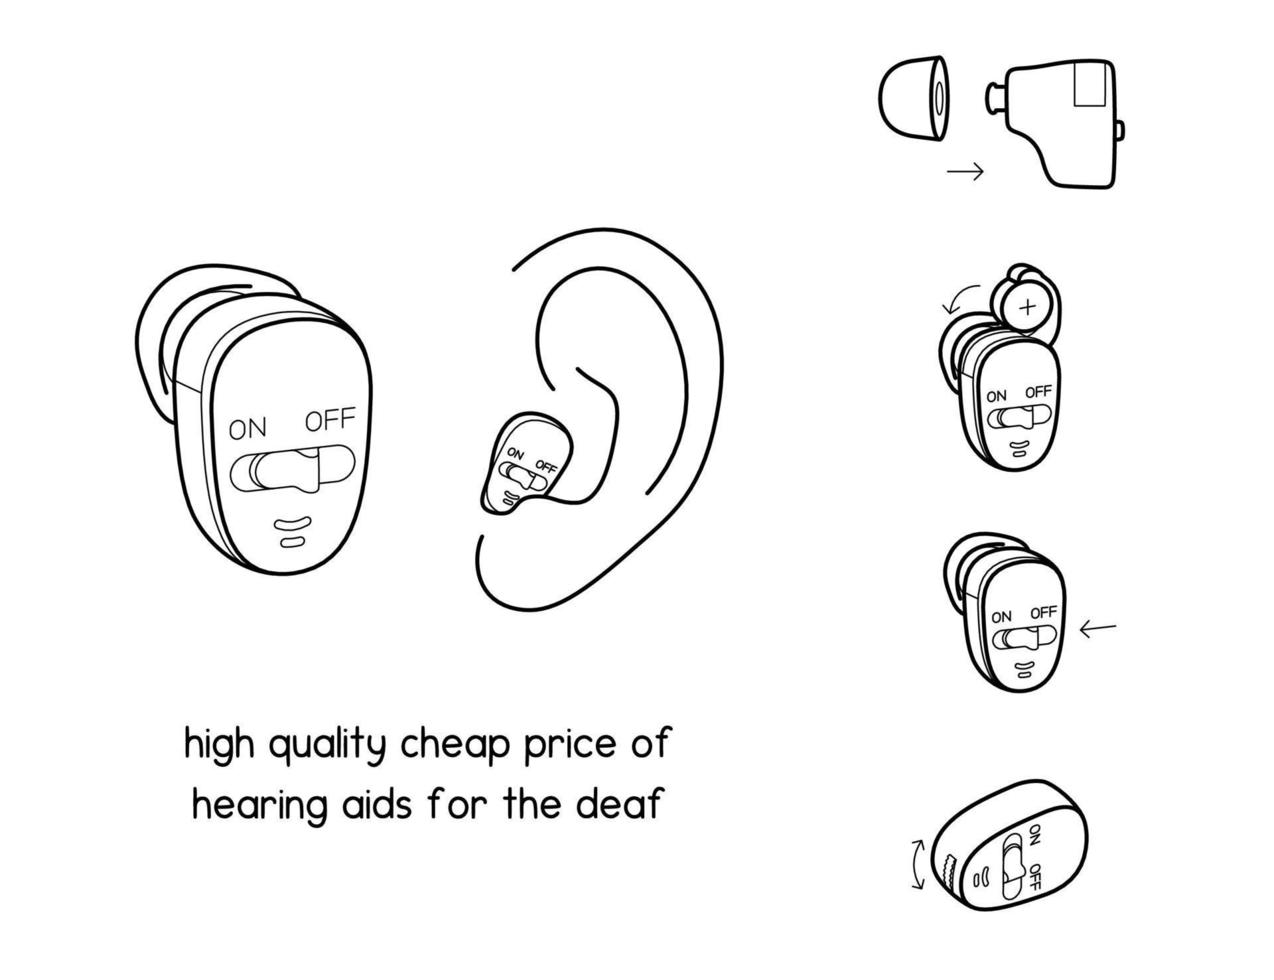 hög kvalitet billig pris av hörsel AIDS för de döv diagram för experimentera uppstart labb översikt vektor illustration